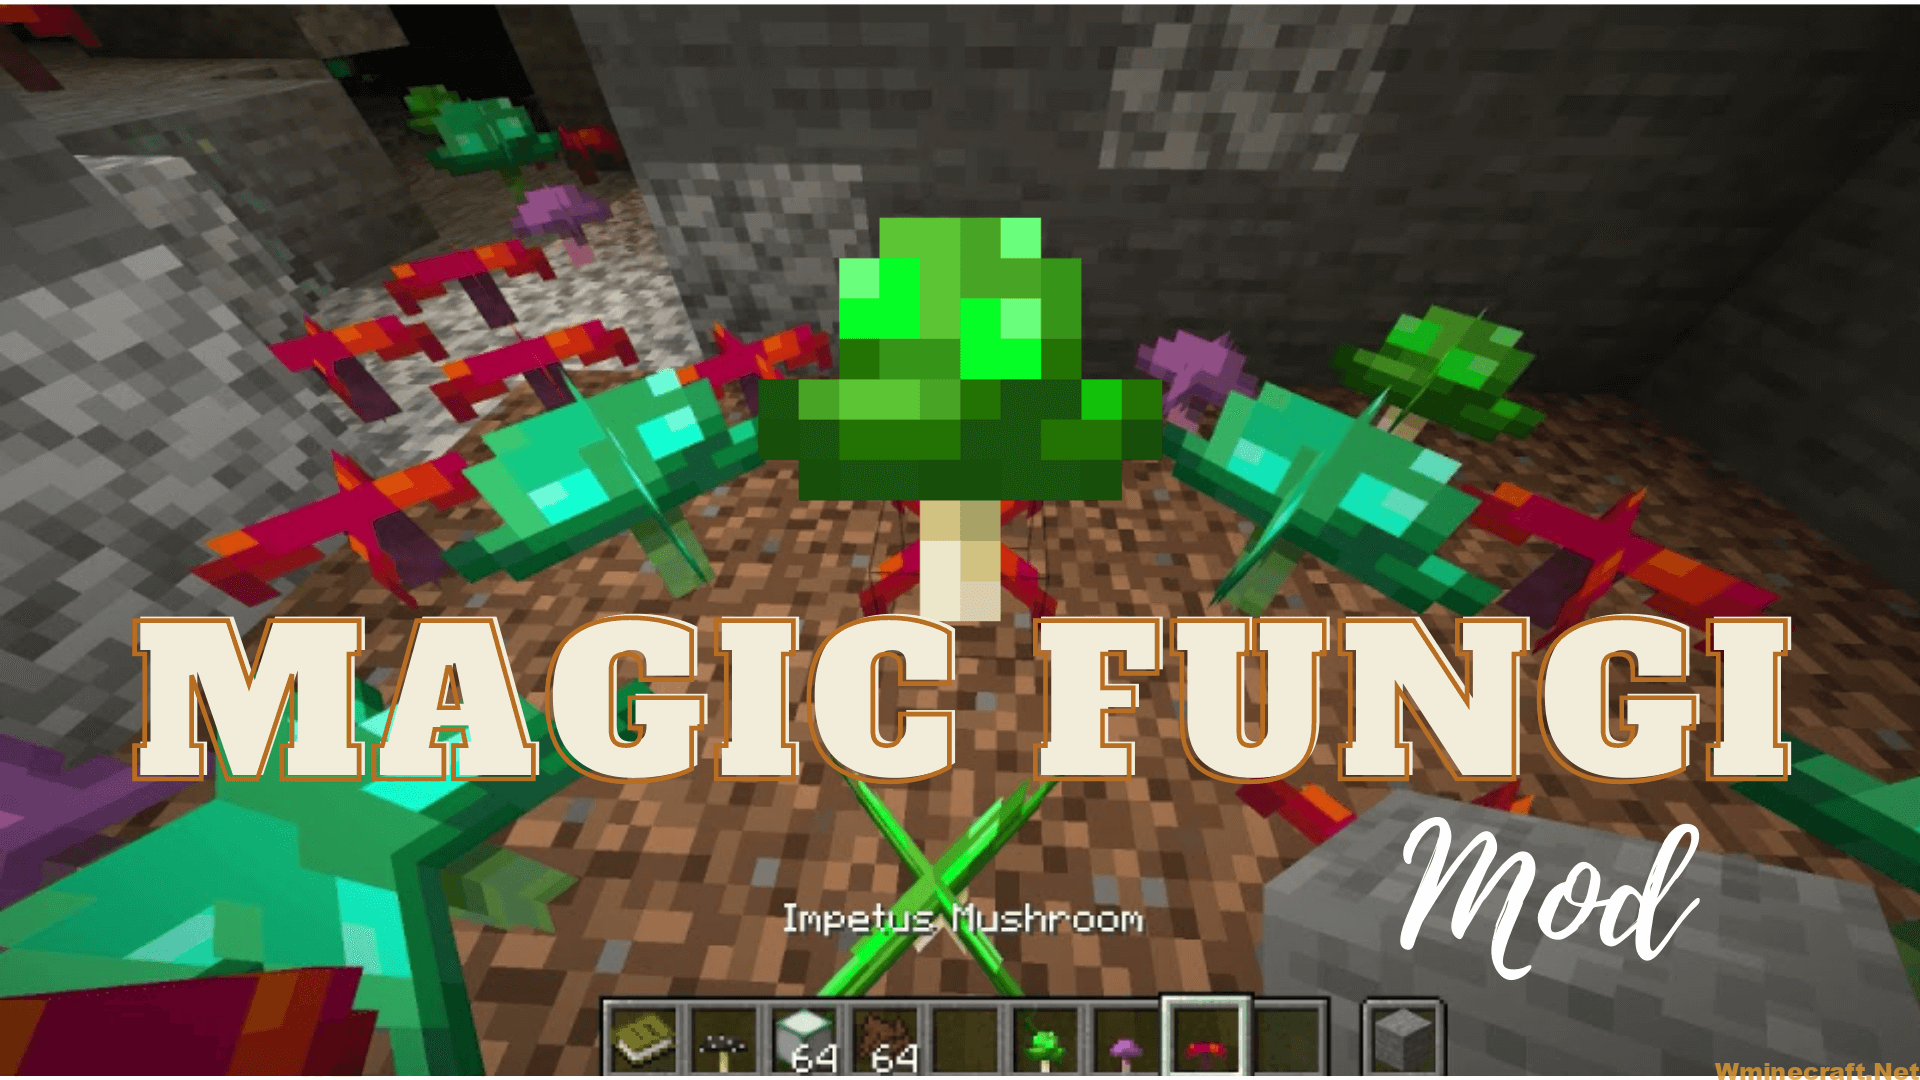 Magic Fungi Mod